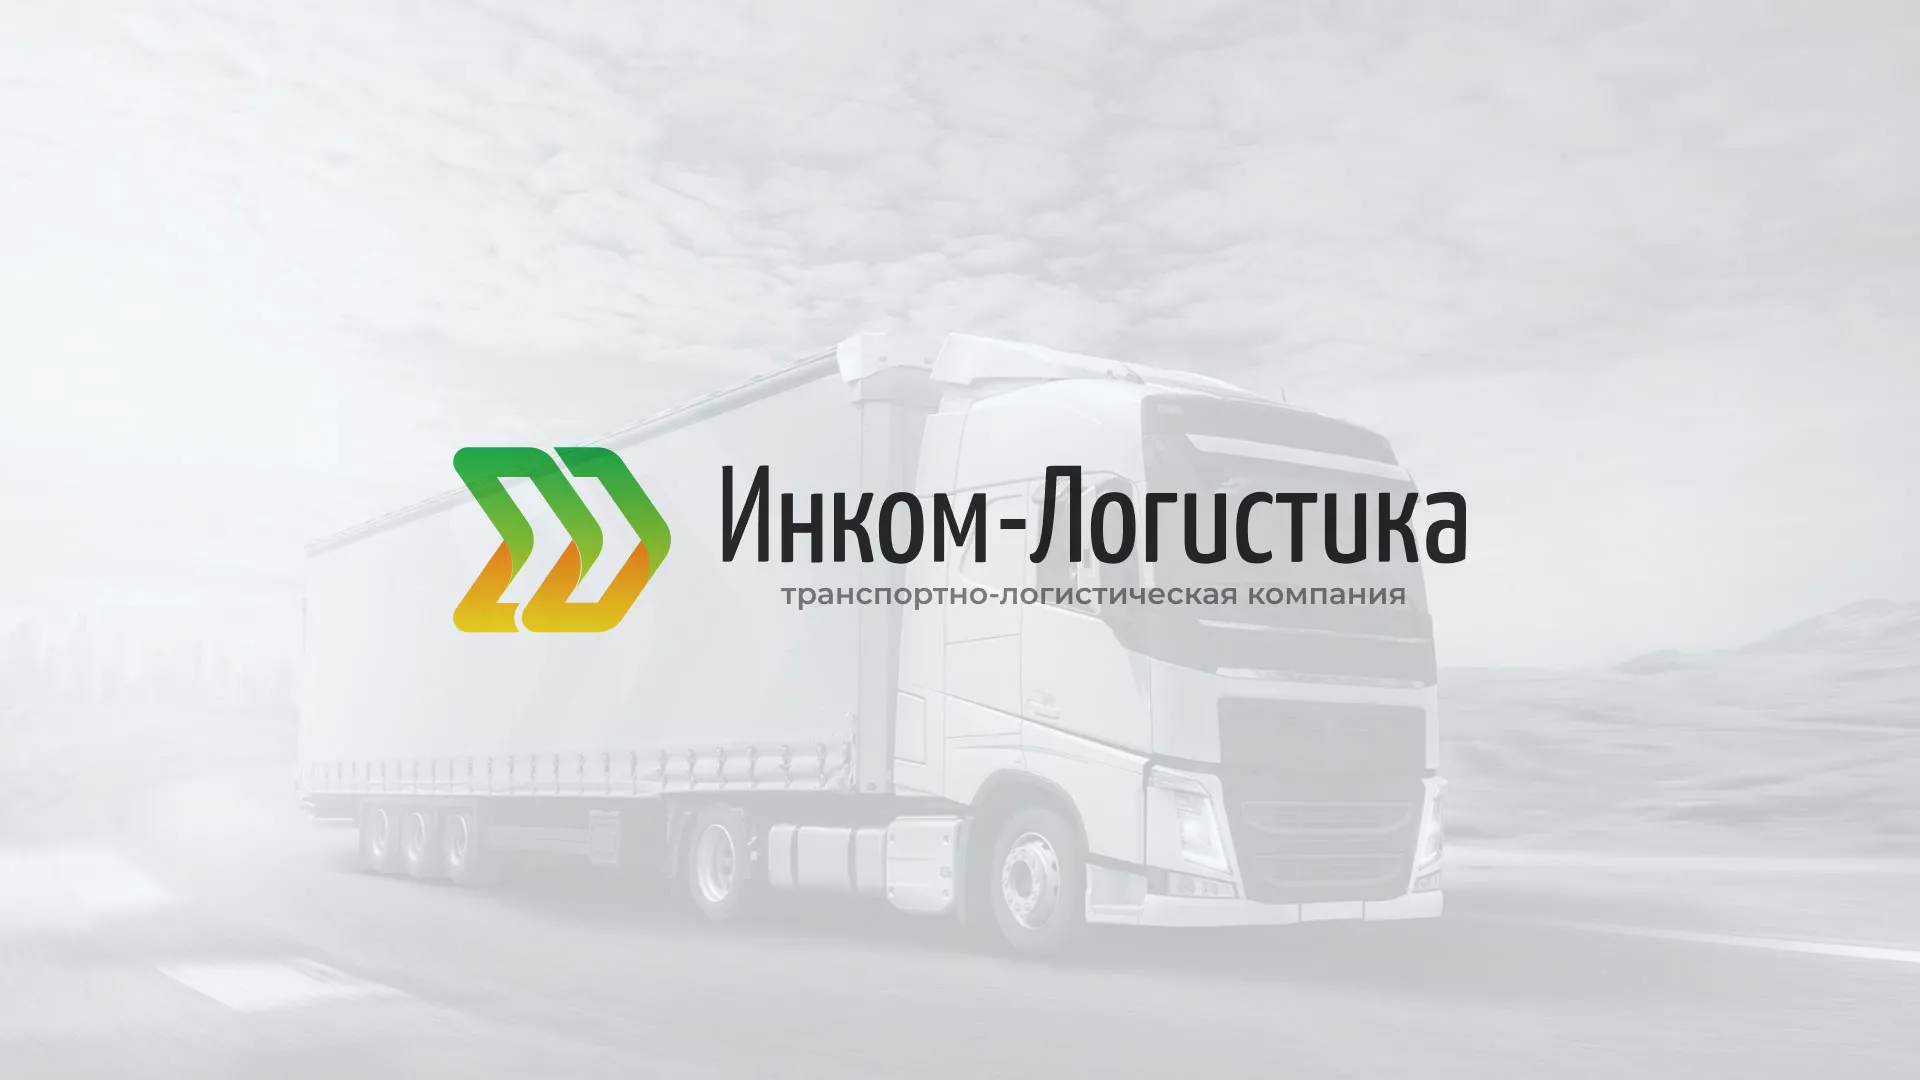 Разработка логотипа и сайта компании «Инком-Логистика» в Ярцево